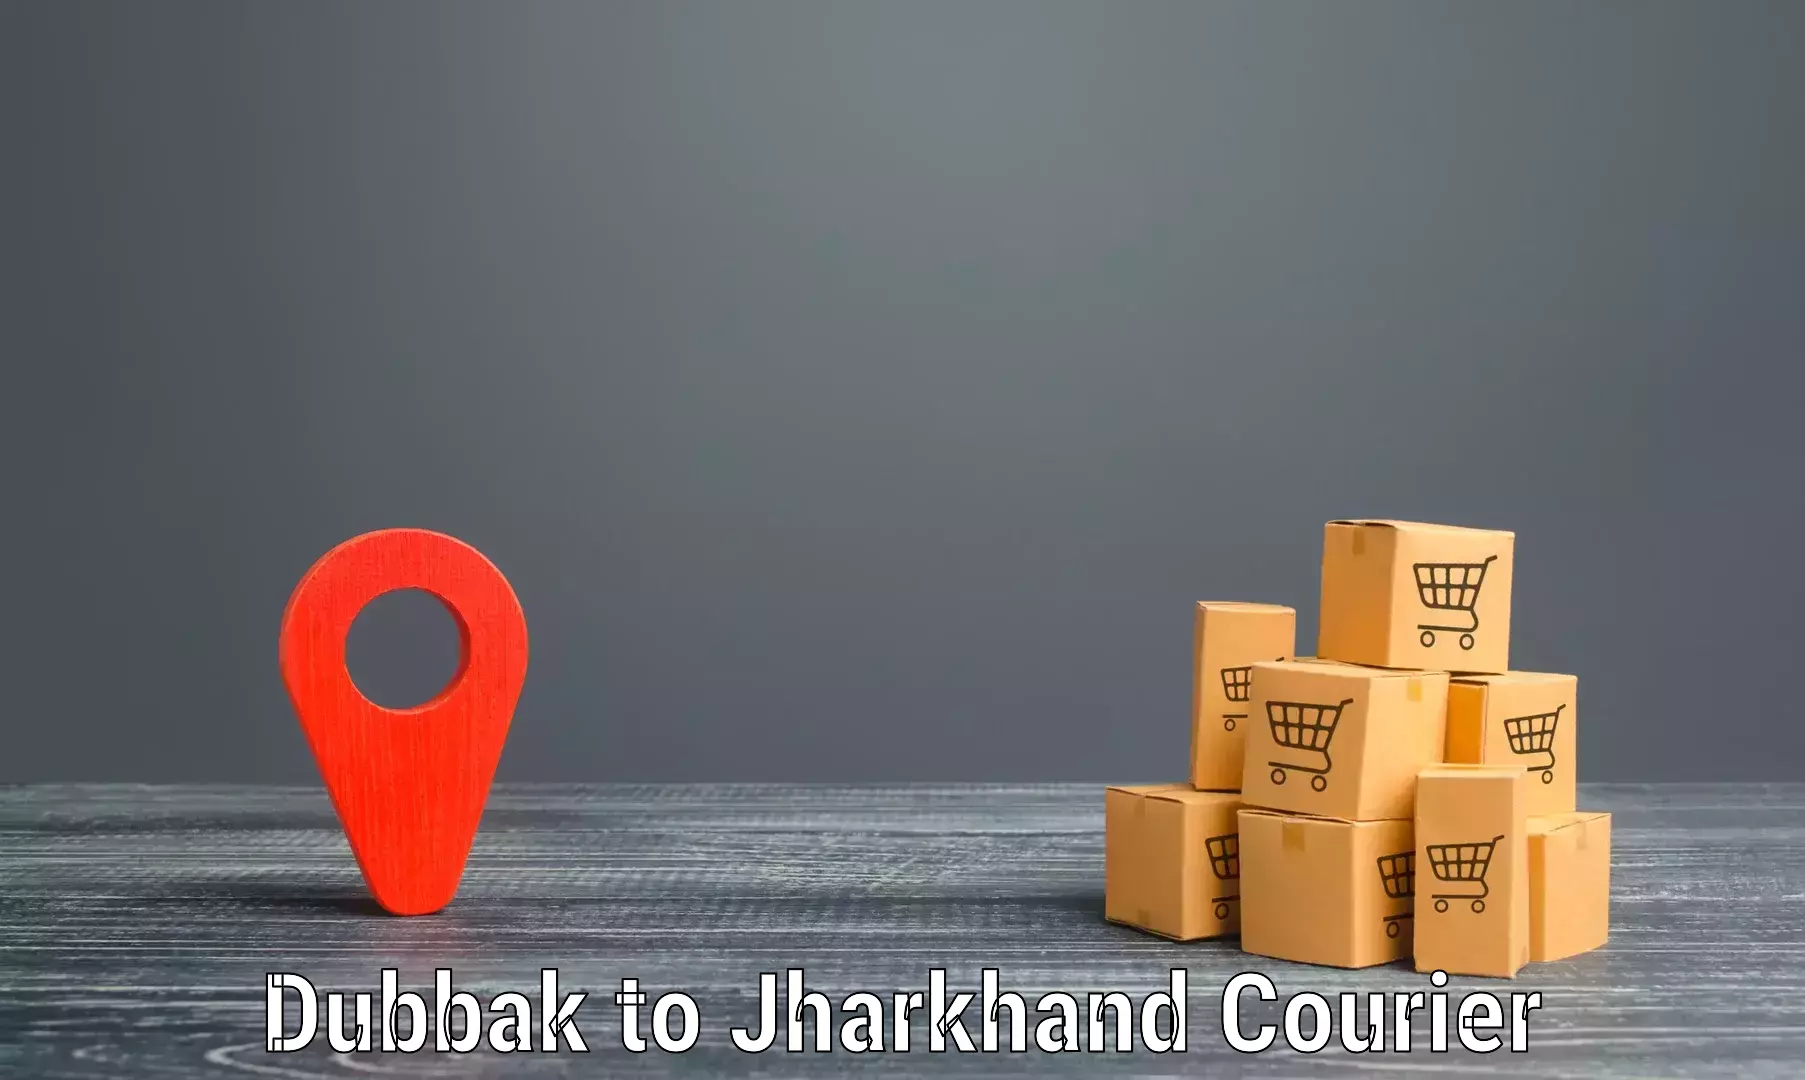 High-speed parcel service Dubbak to Isri